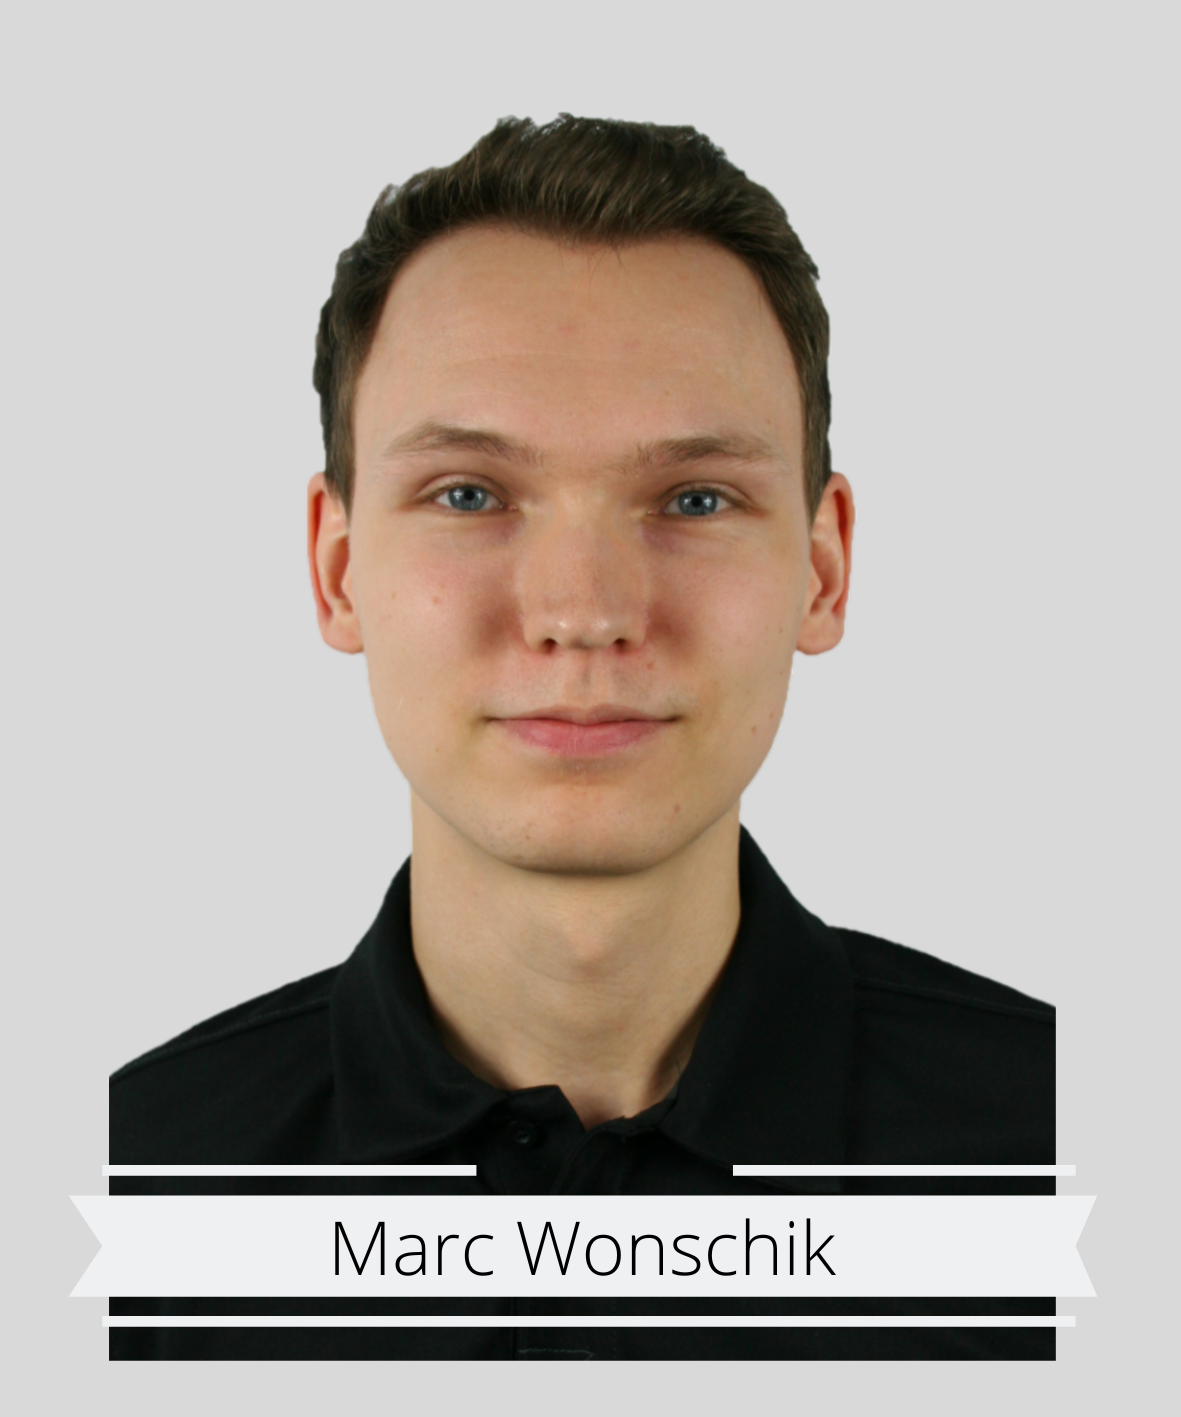 Marc Wonschik